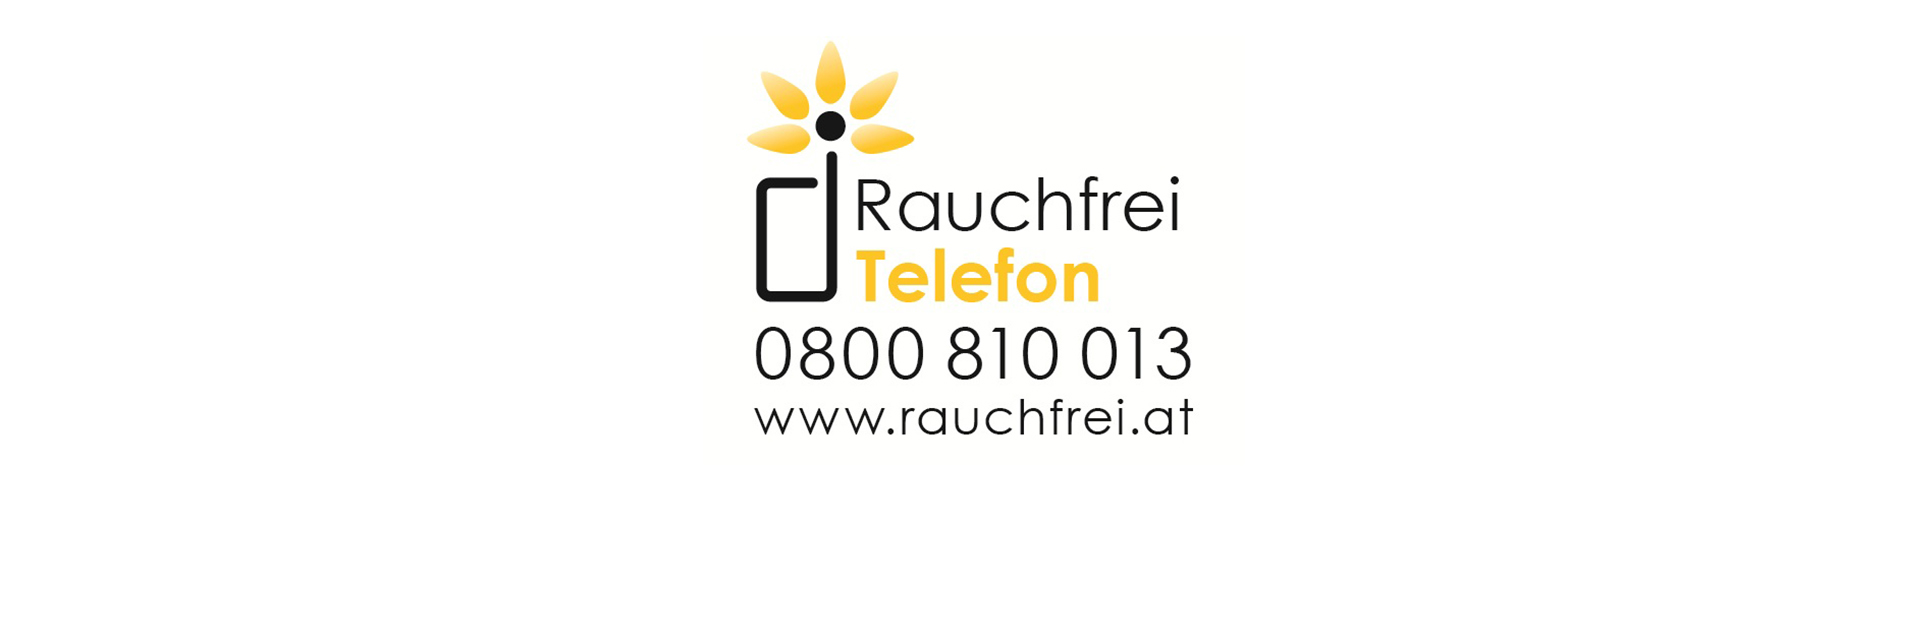 www.rauchfrei.at